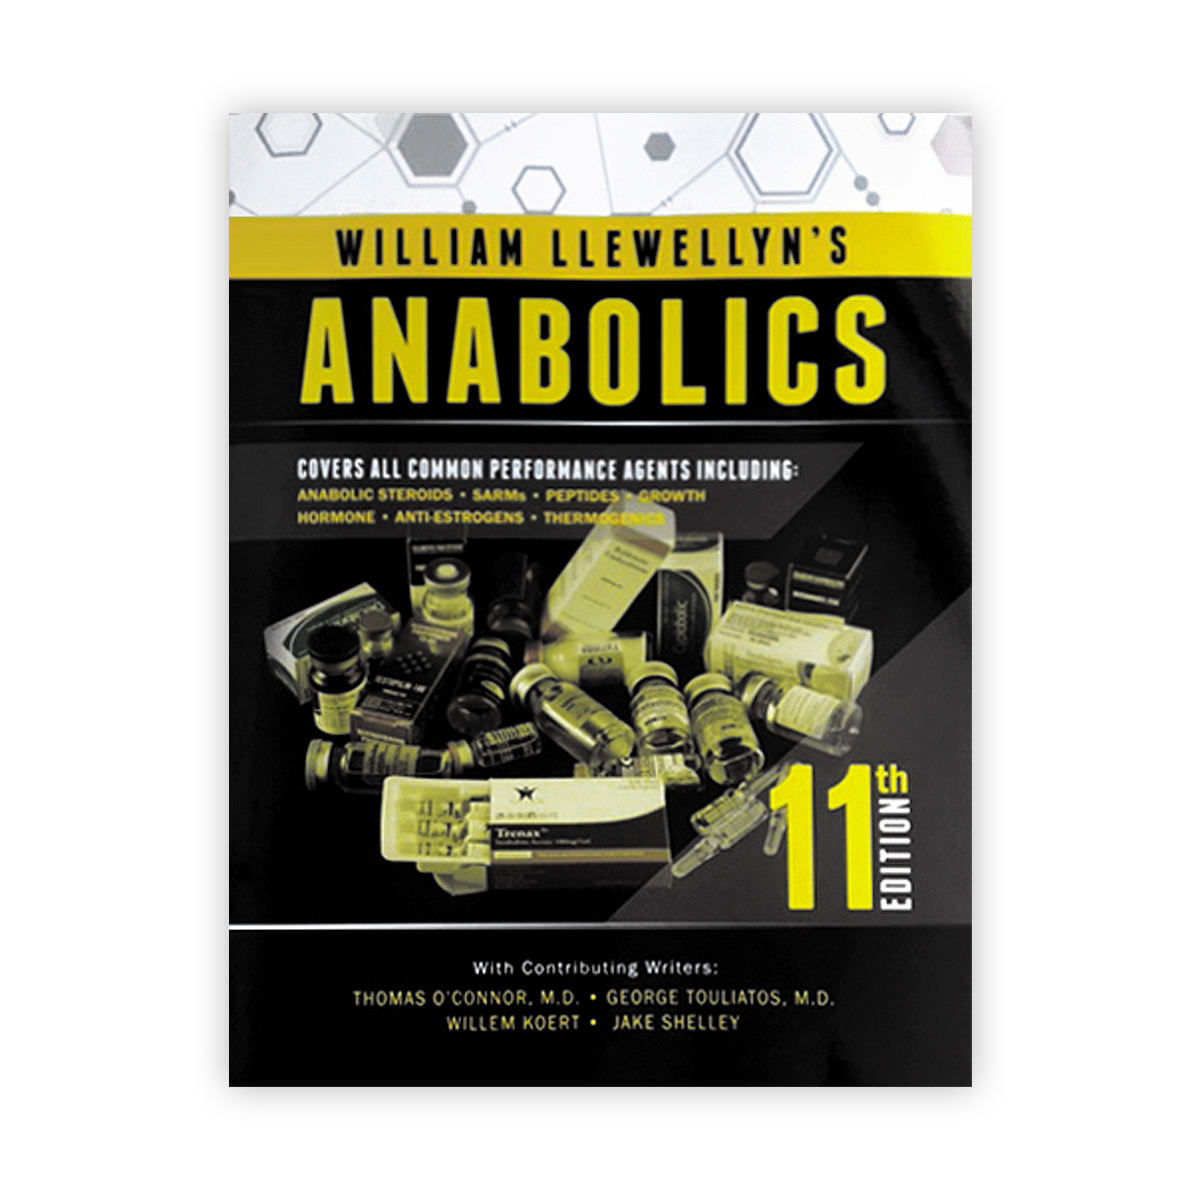 Anabolics 11th Edition by William Llewellyn 